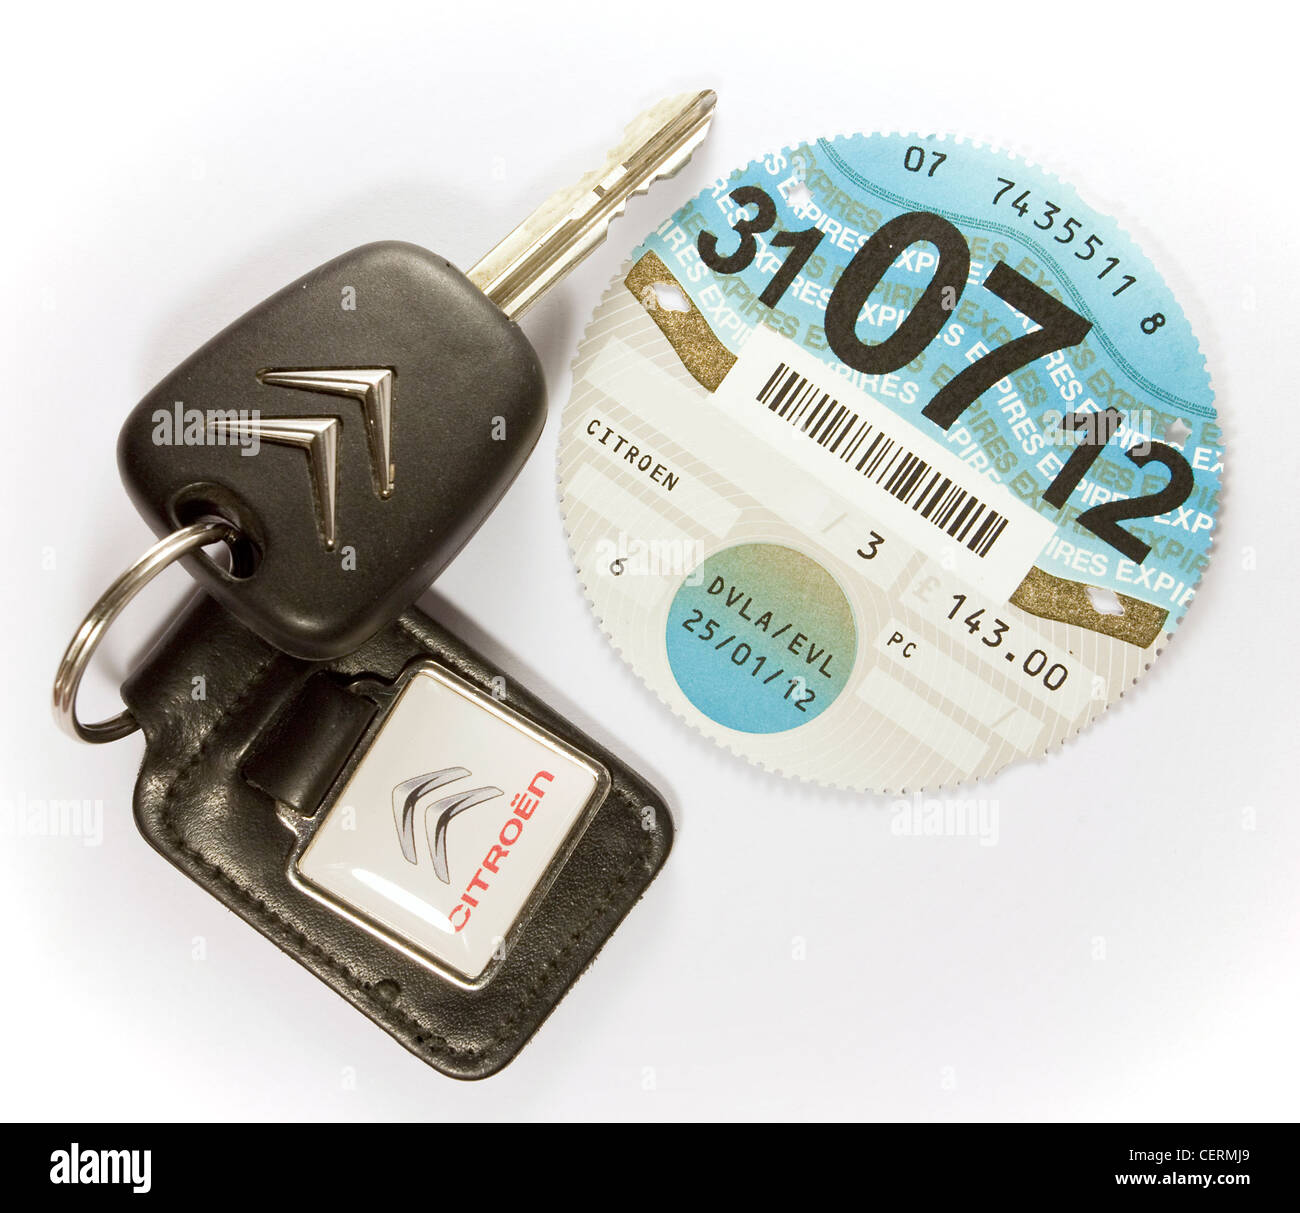 Taxe voiture véhicule disque licence avec des clés de voiture DVLA Banque D'Images